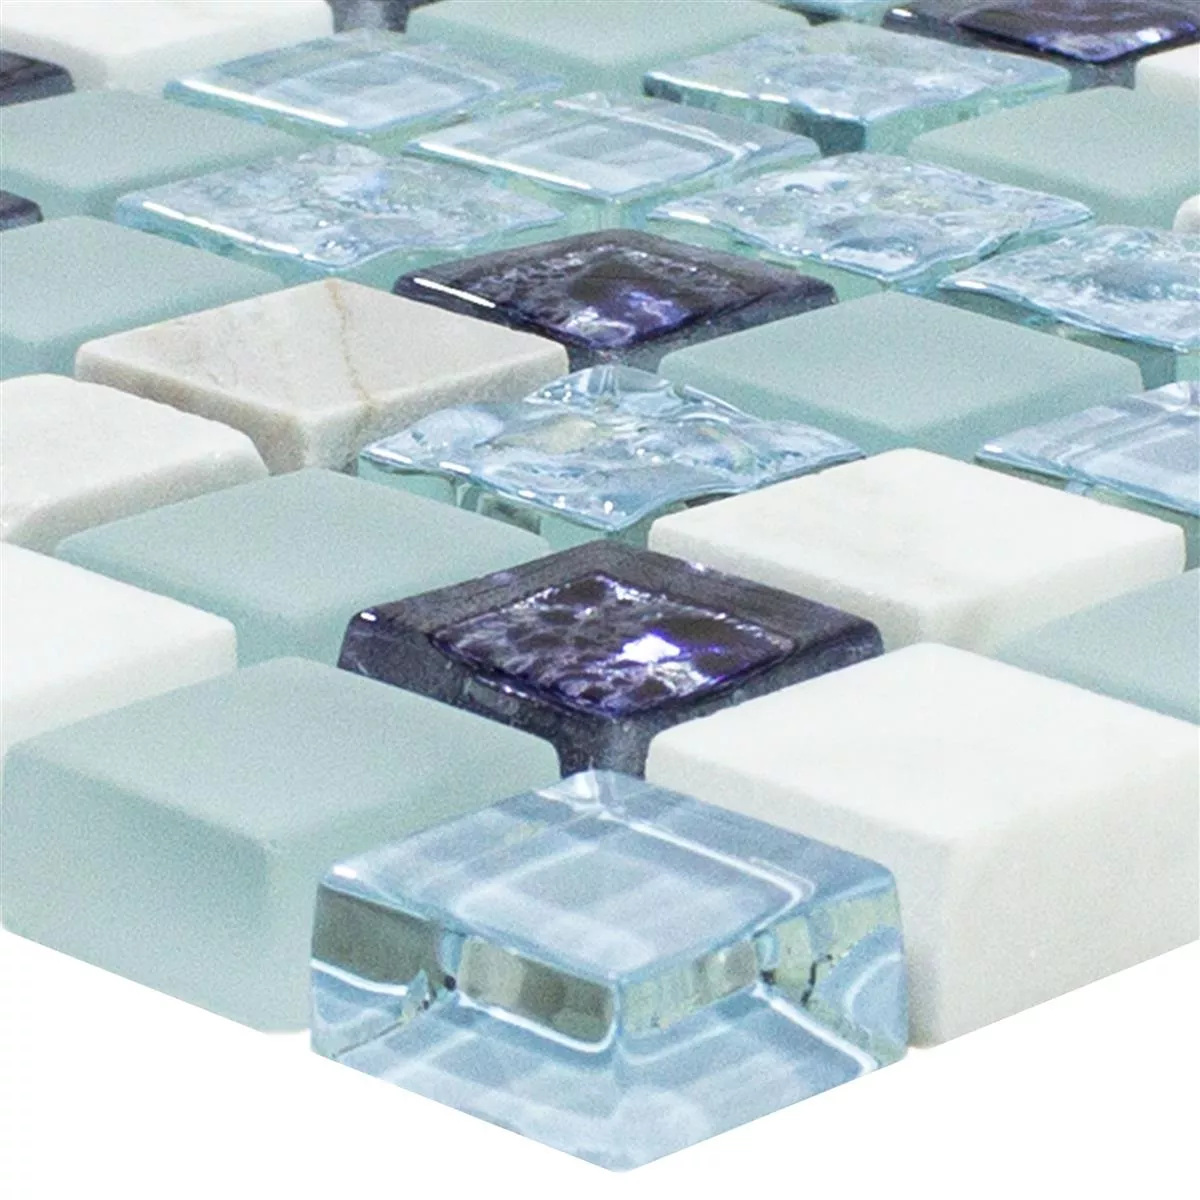 Mosaico Di Vetro Piastrelle Lexington Vetro Mix di Materiali Blu